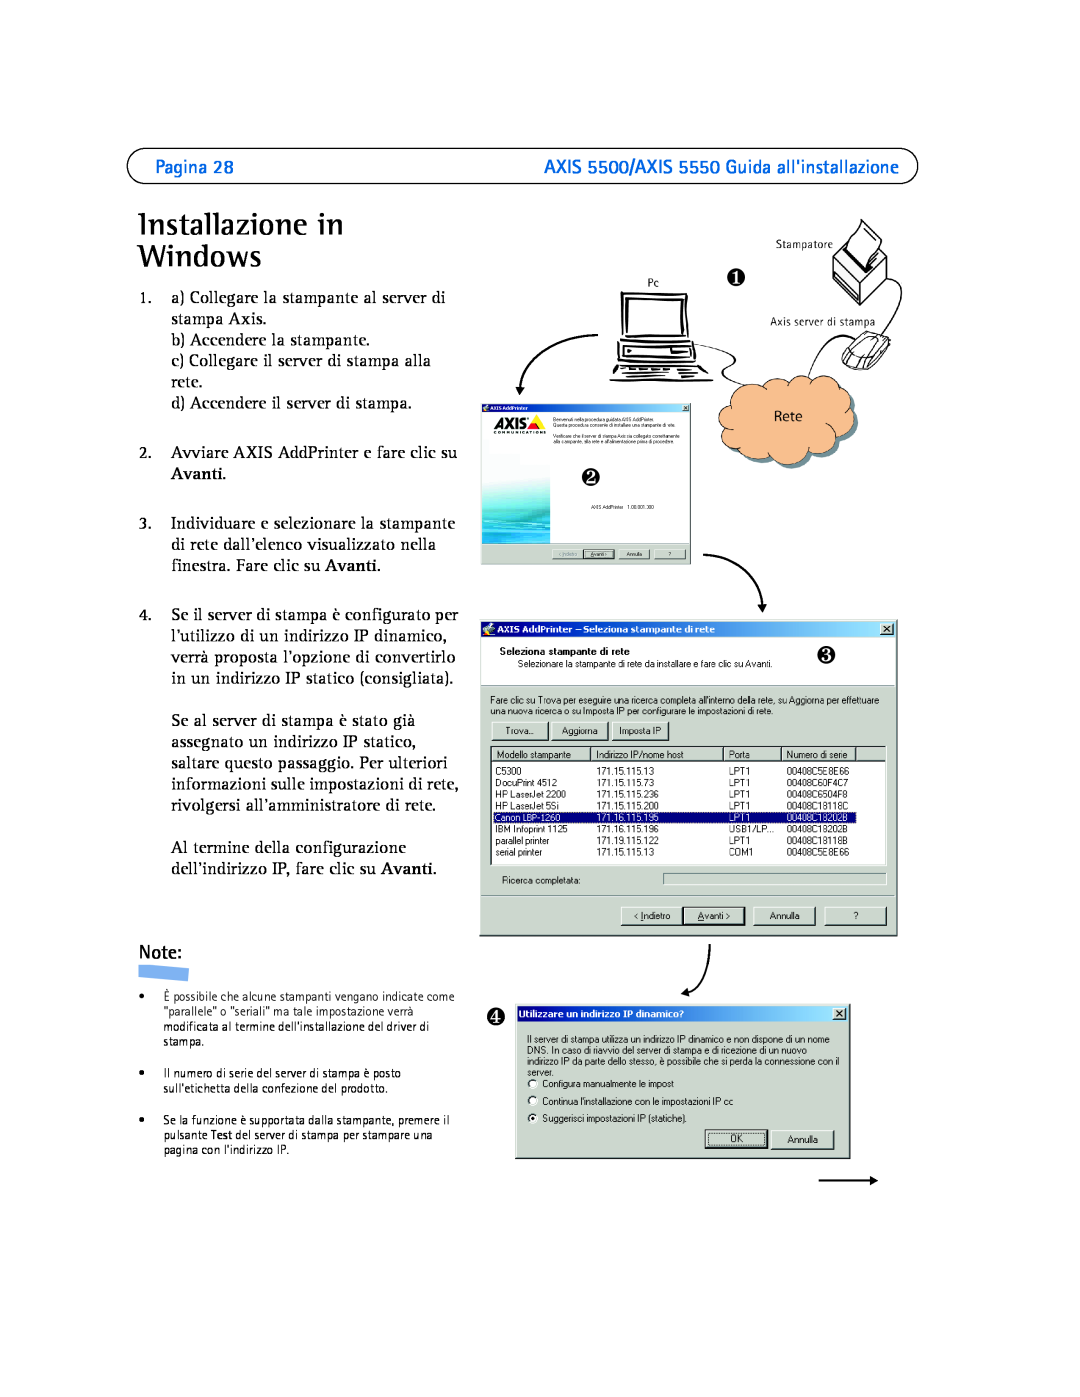 Axis Communications manual Installazione in Windows, Pagina, ❶ ❷ ❸, AXIS 5500/AXIS 5550 Guida allinstallazione 